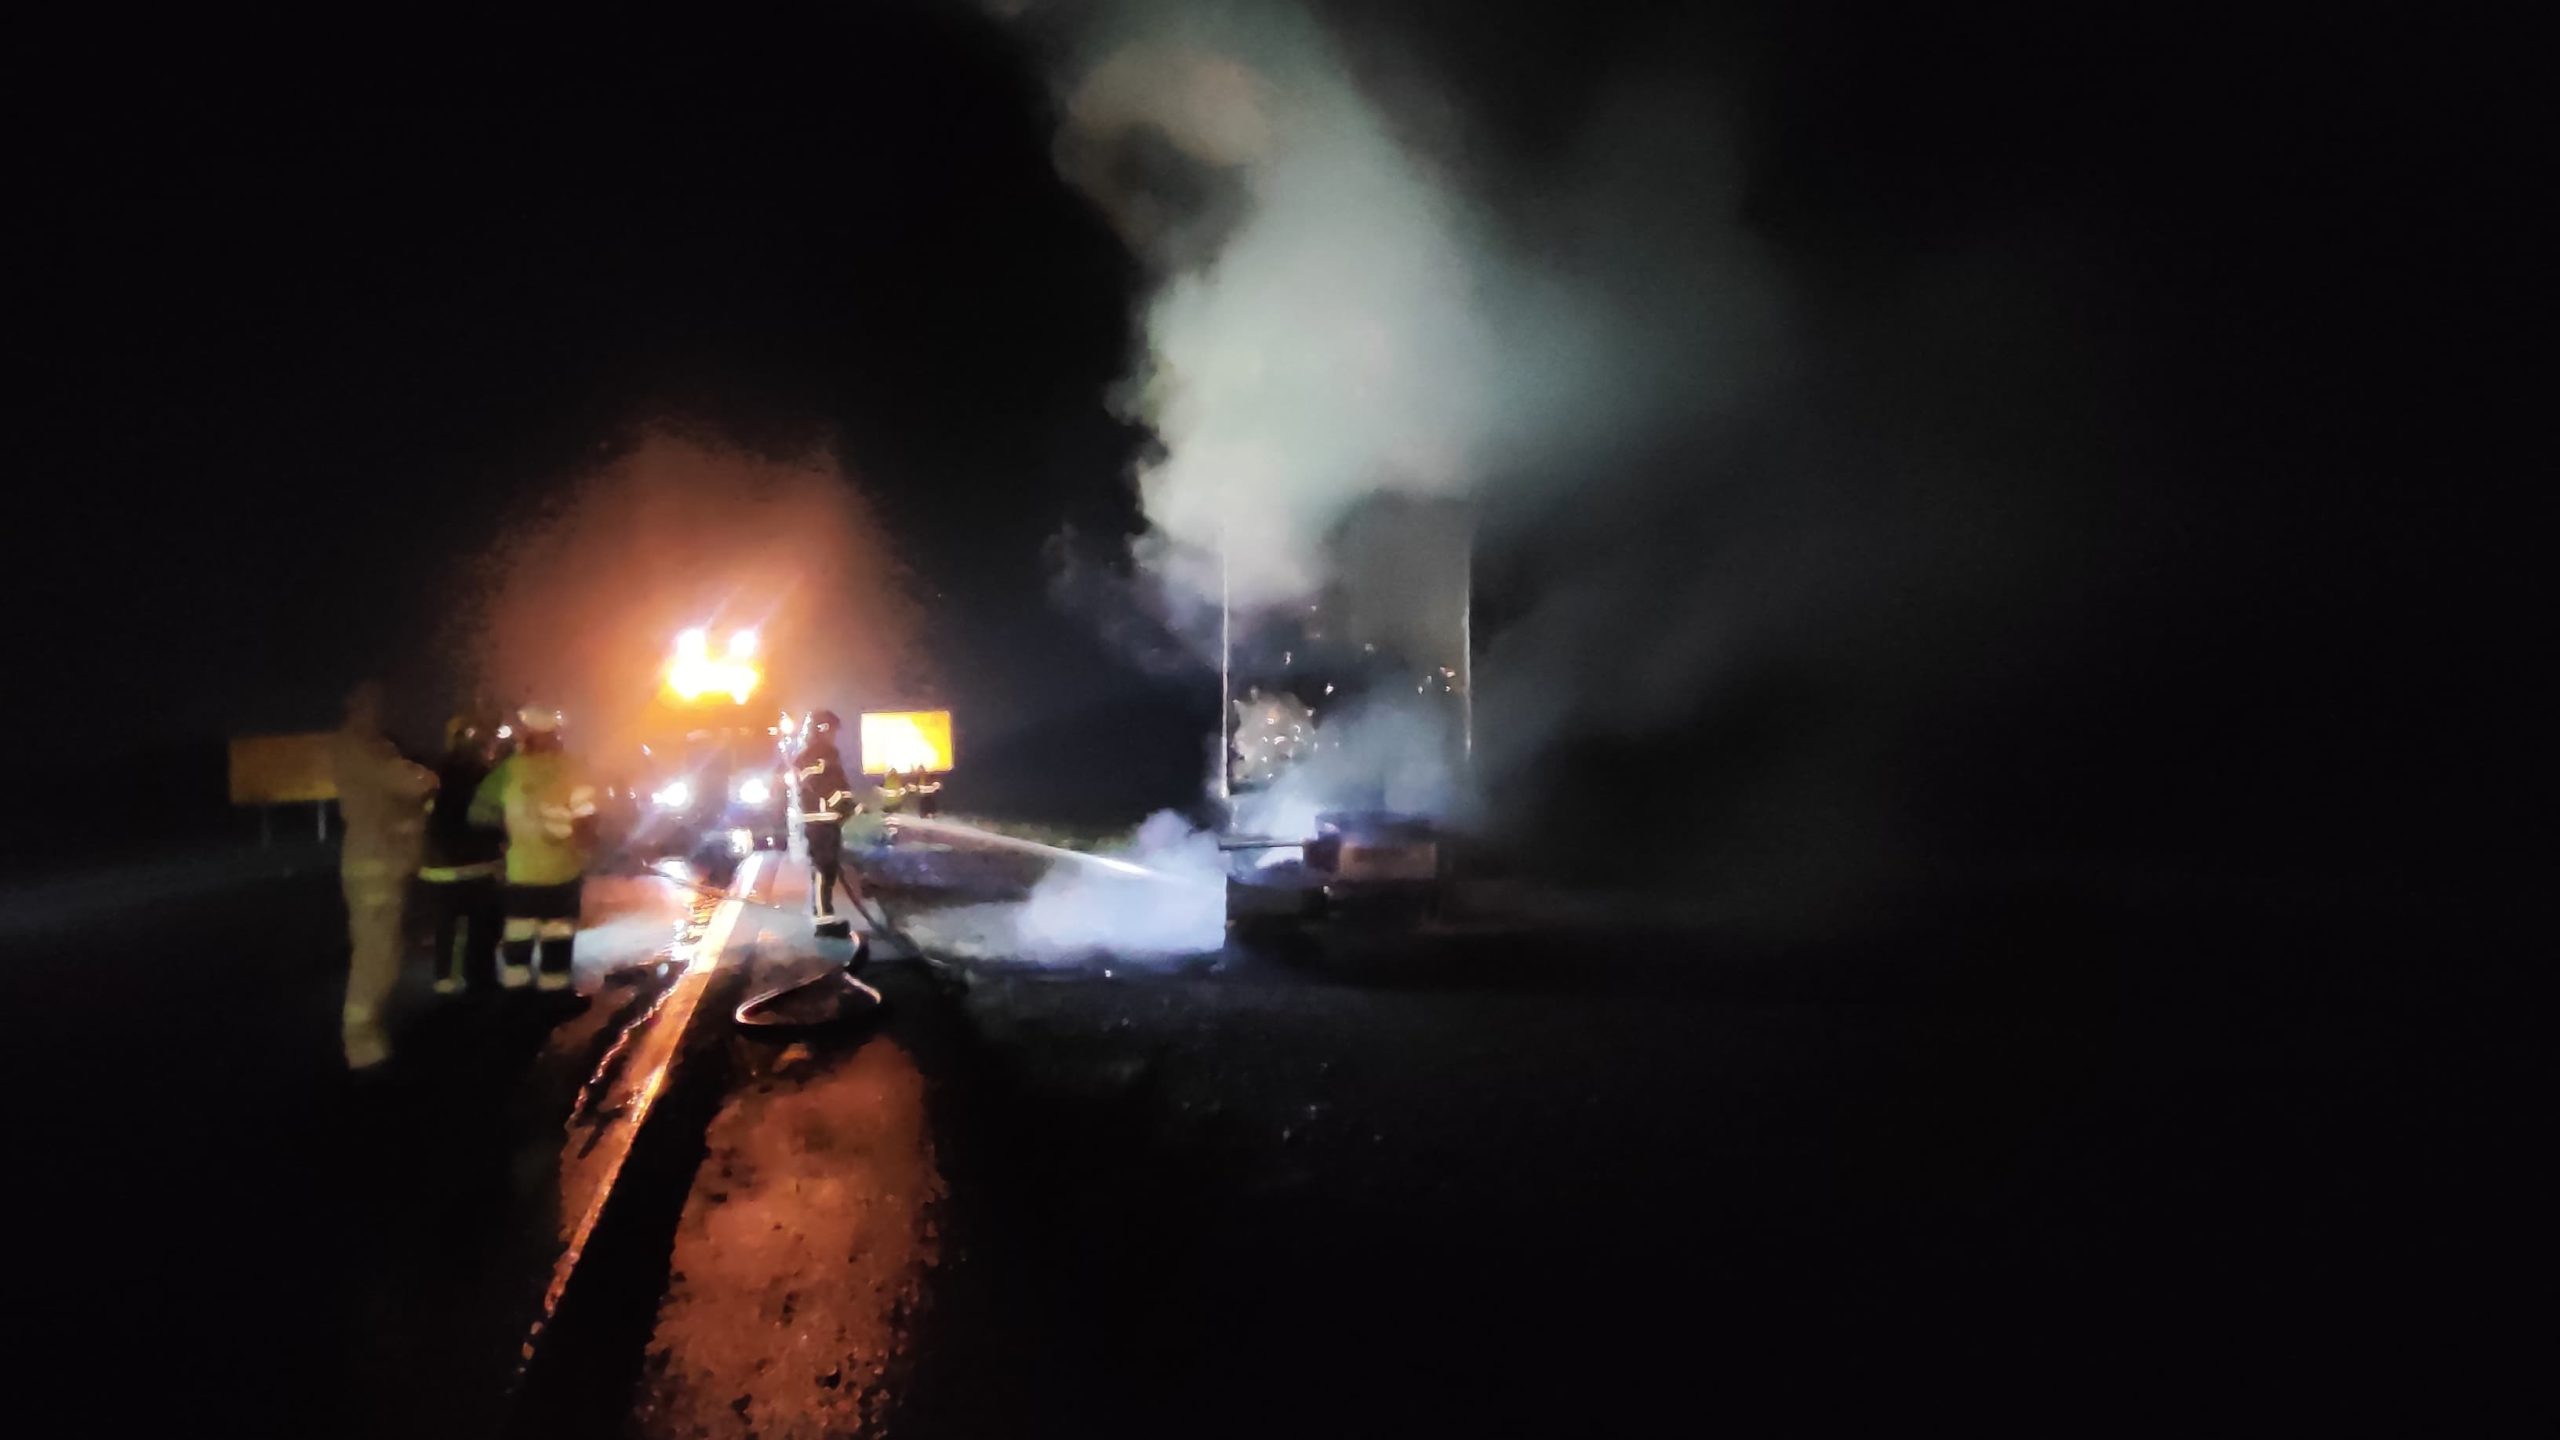  Carga não foi afetada pelo incêndio em caminhão na BR-116 